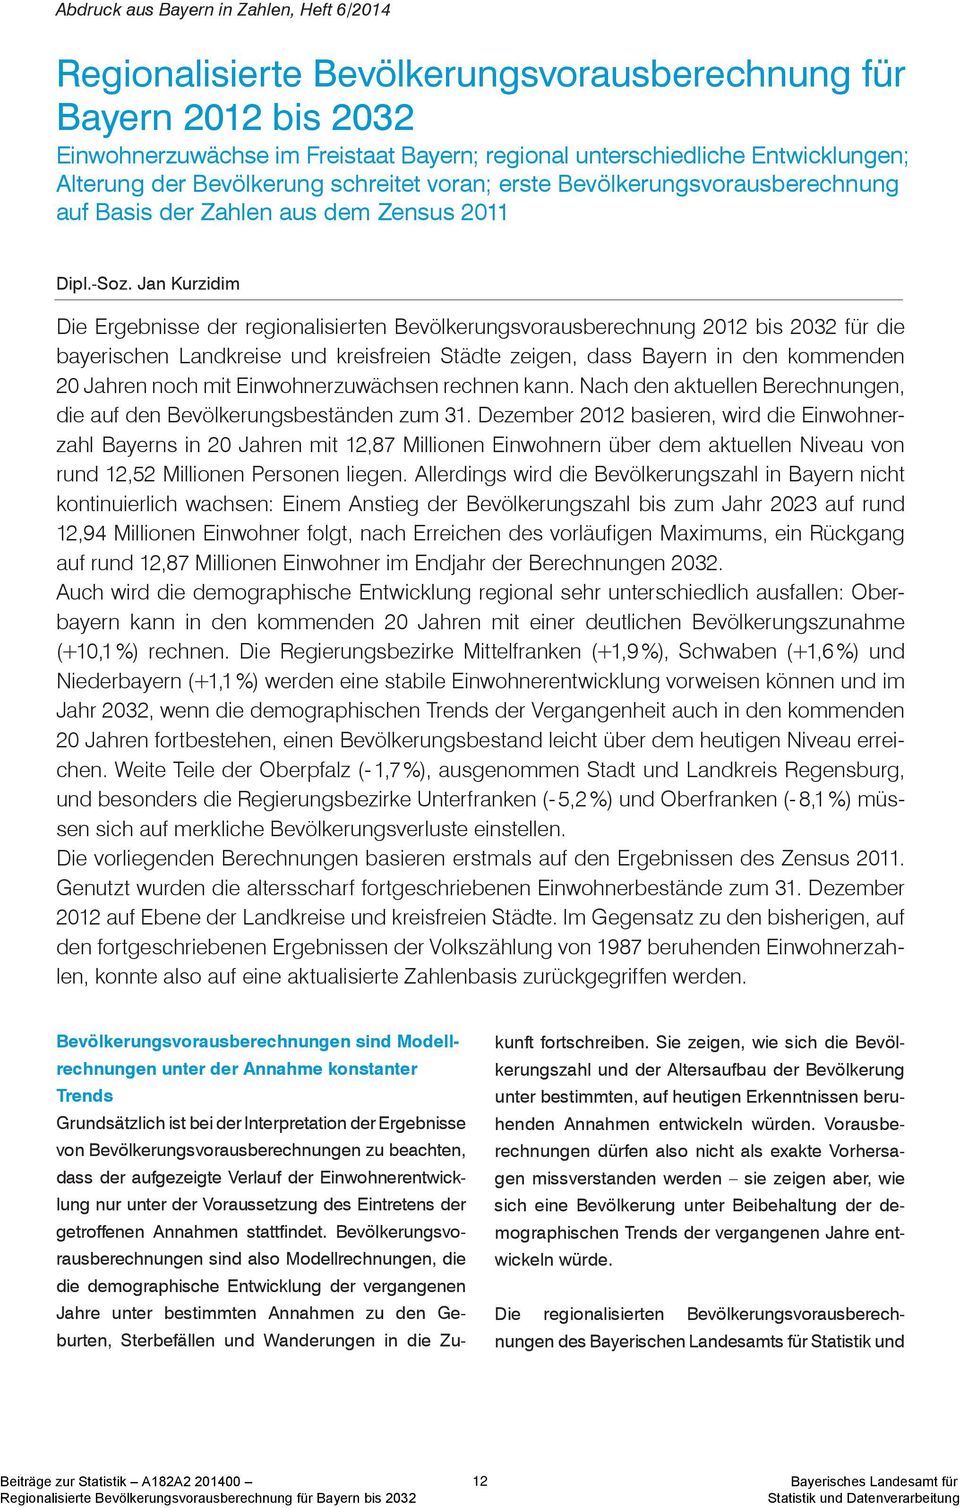 Jan Kurzidim Die Ergebnisse der regionalisierten Bevölkerungsvorausberechnung 2012 bis 2032 für die bayerischen e und kreisfreien Städte zeigen, dass Bayern in den kommenden 20 Jahren noch mit